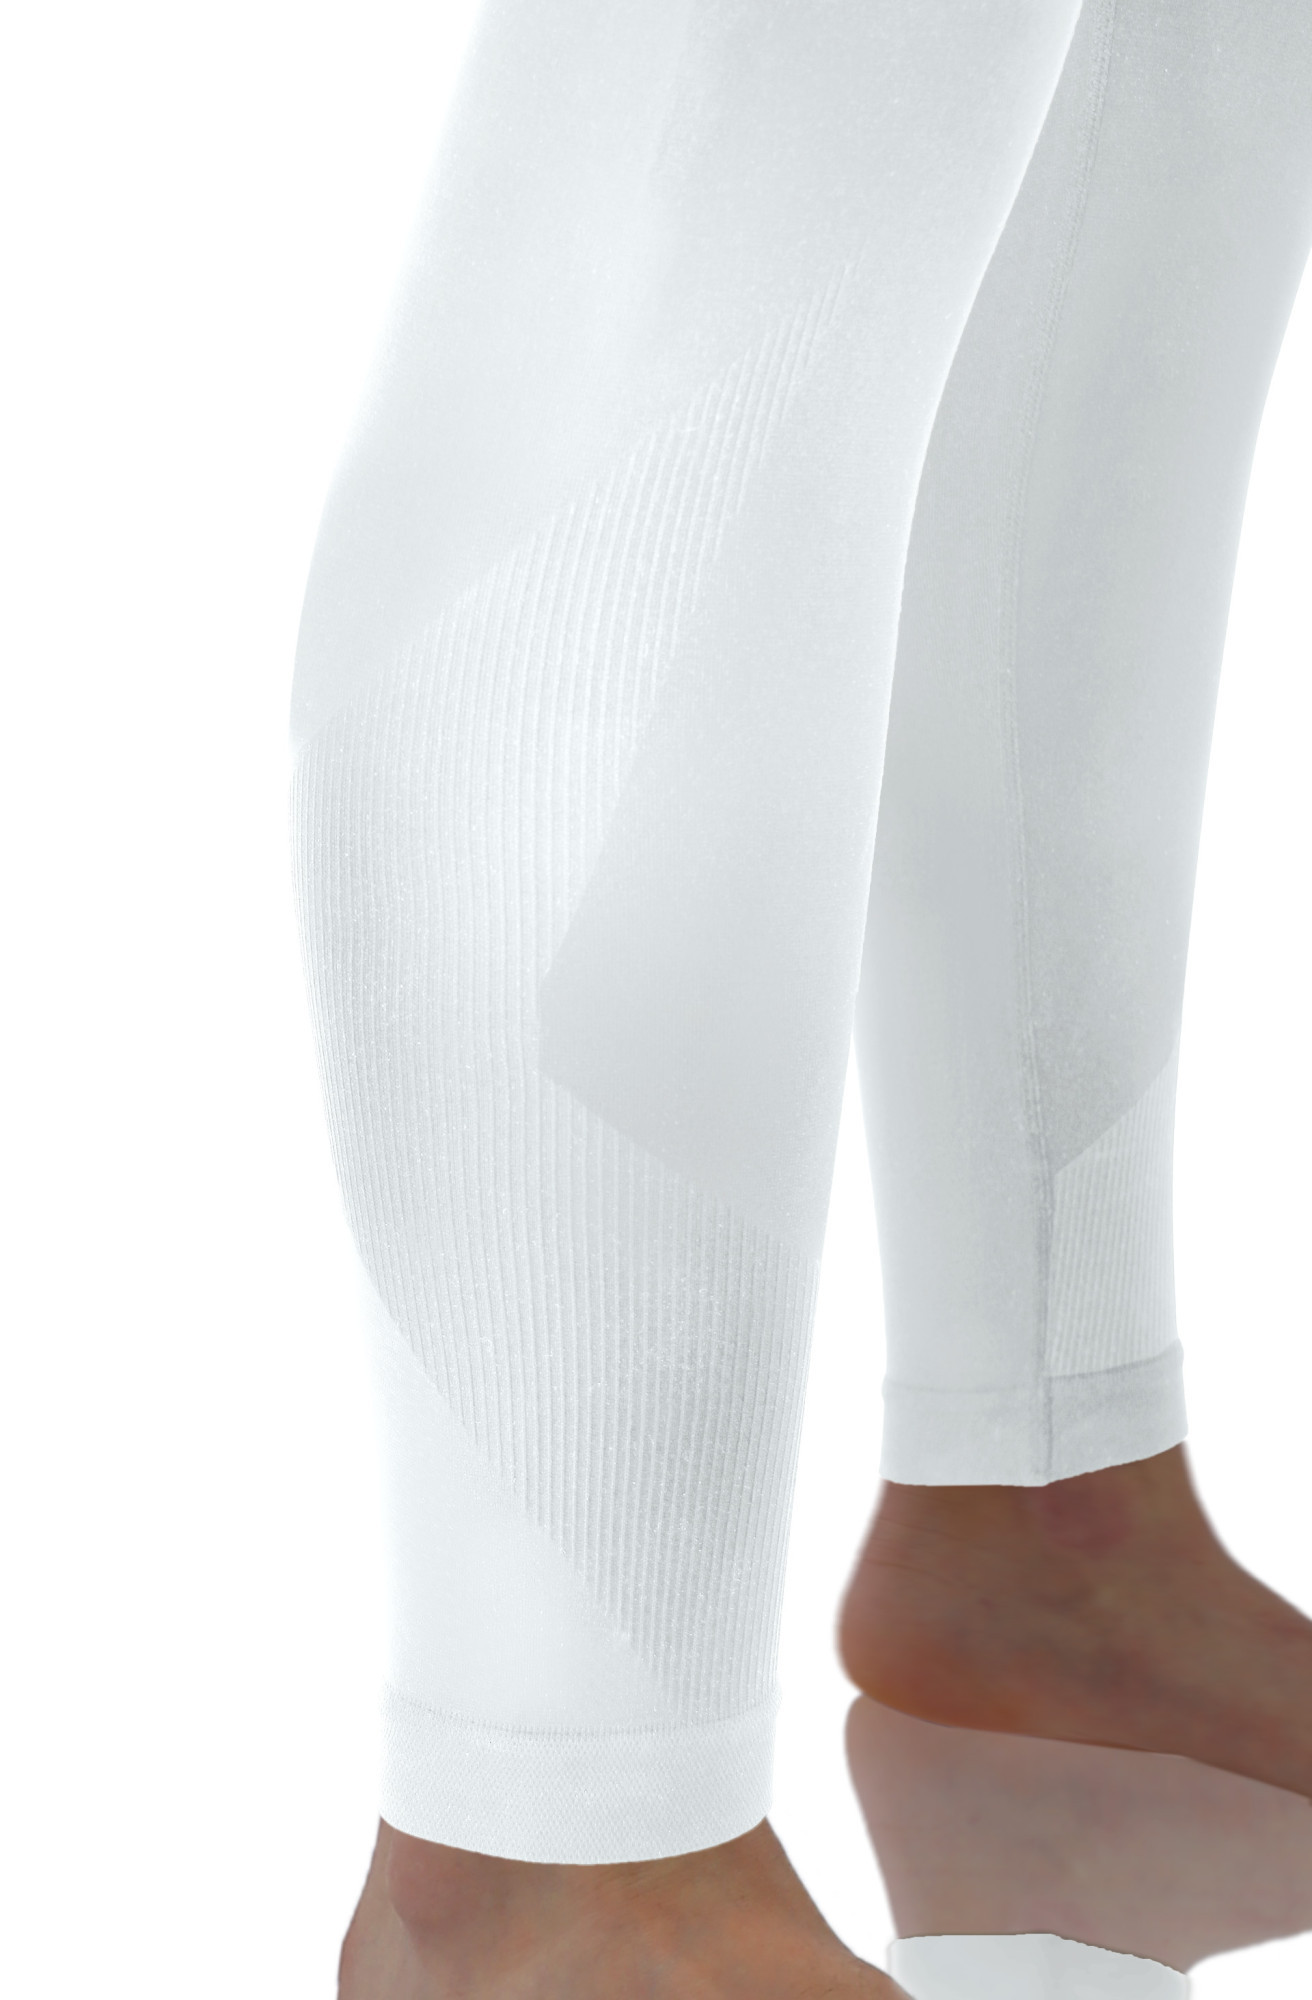 Sesto Senso Thermo kalhoty CL42 White L/XL